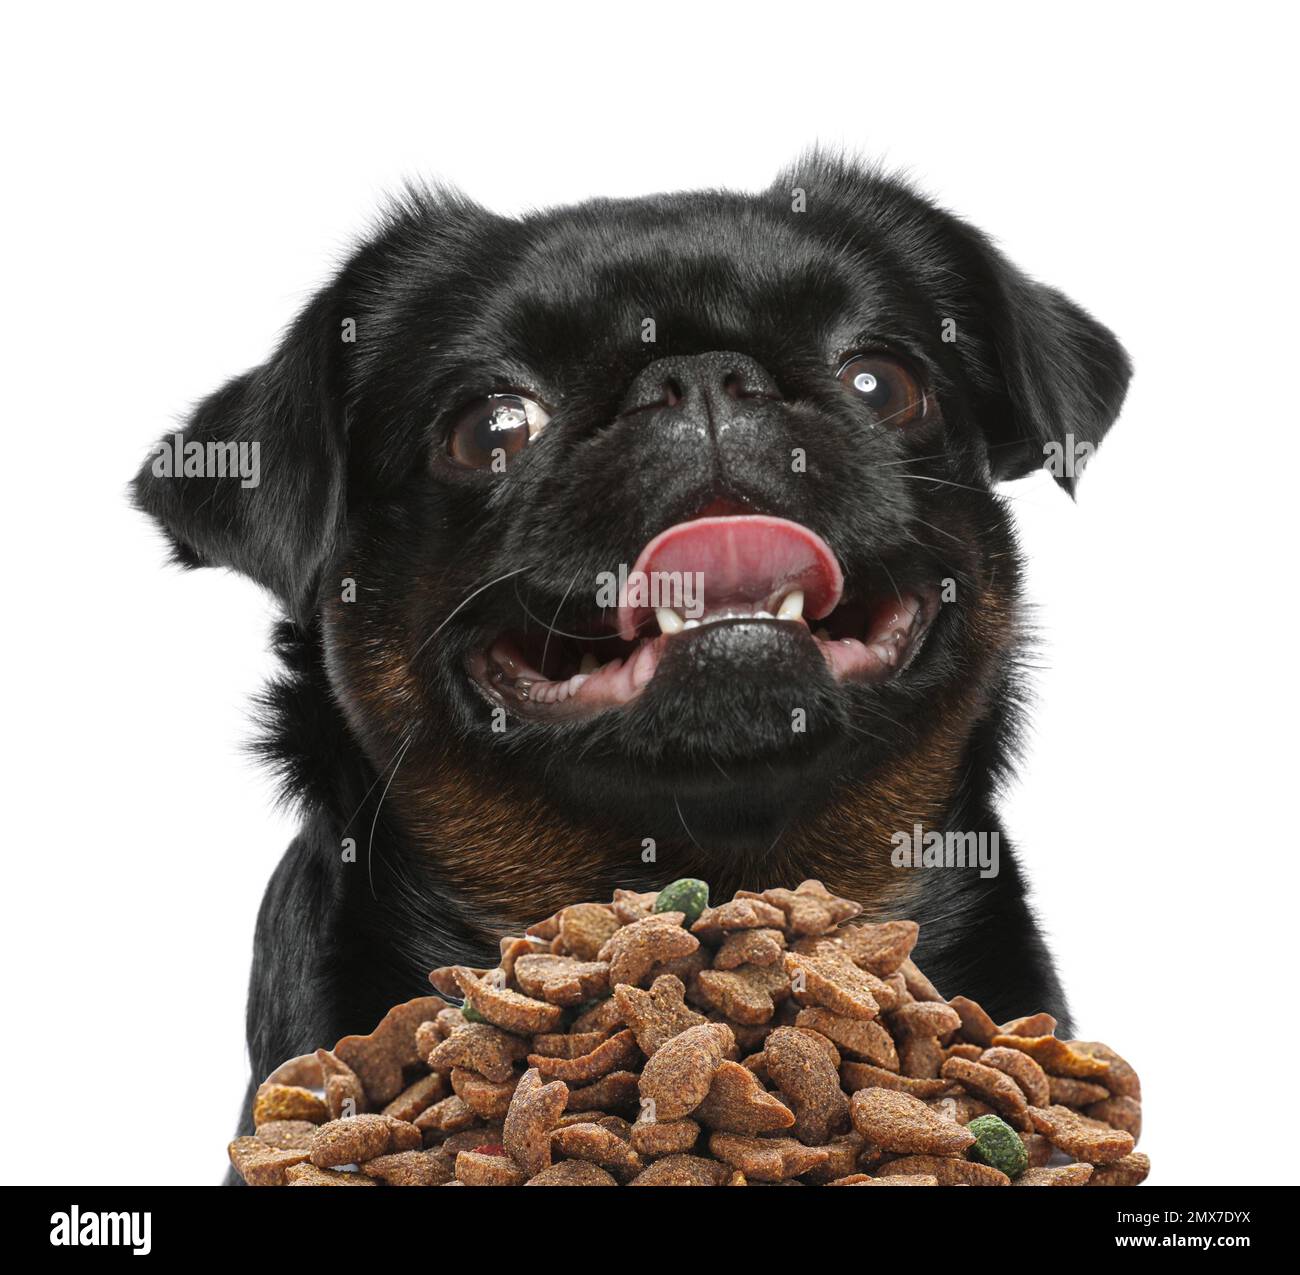 Cute black Petit Brabancon dog and feeding bowl on white background Stock Photo